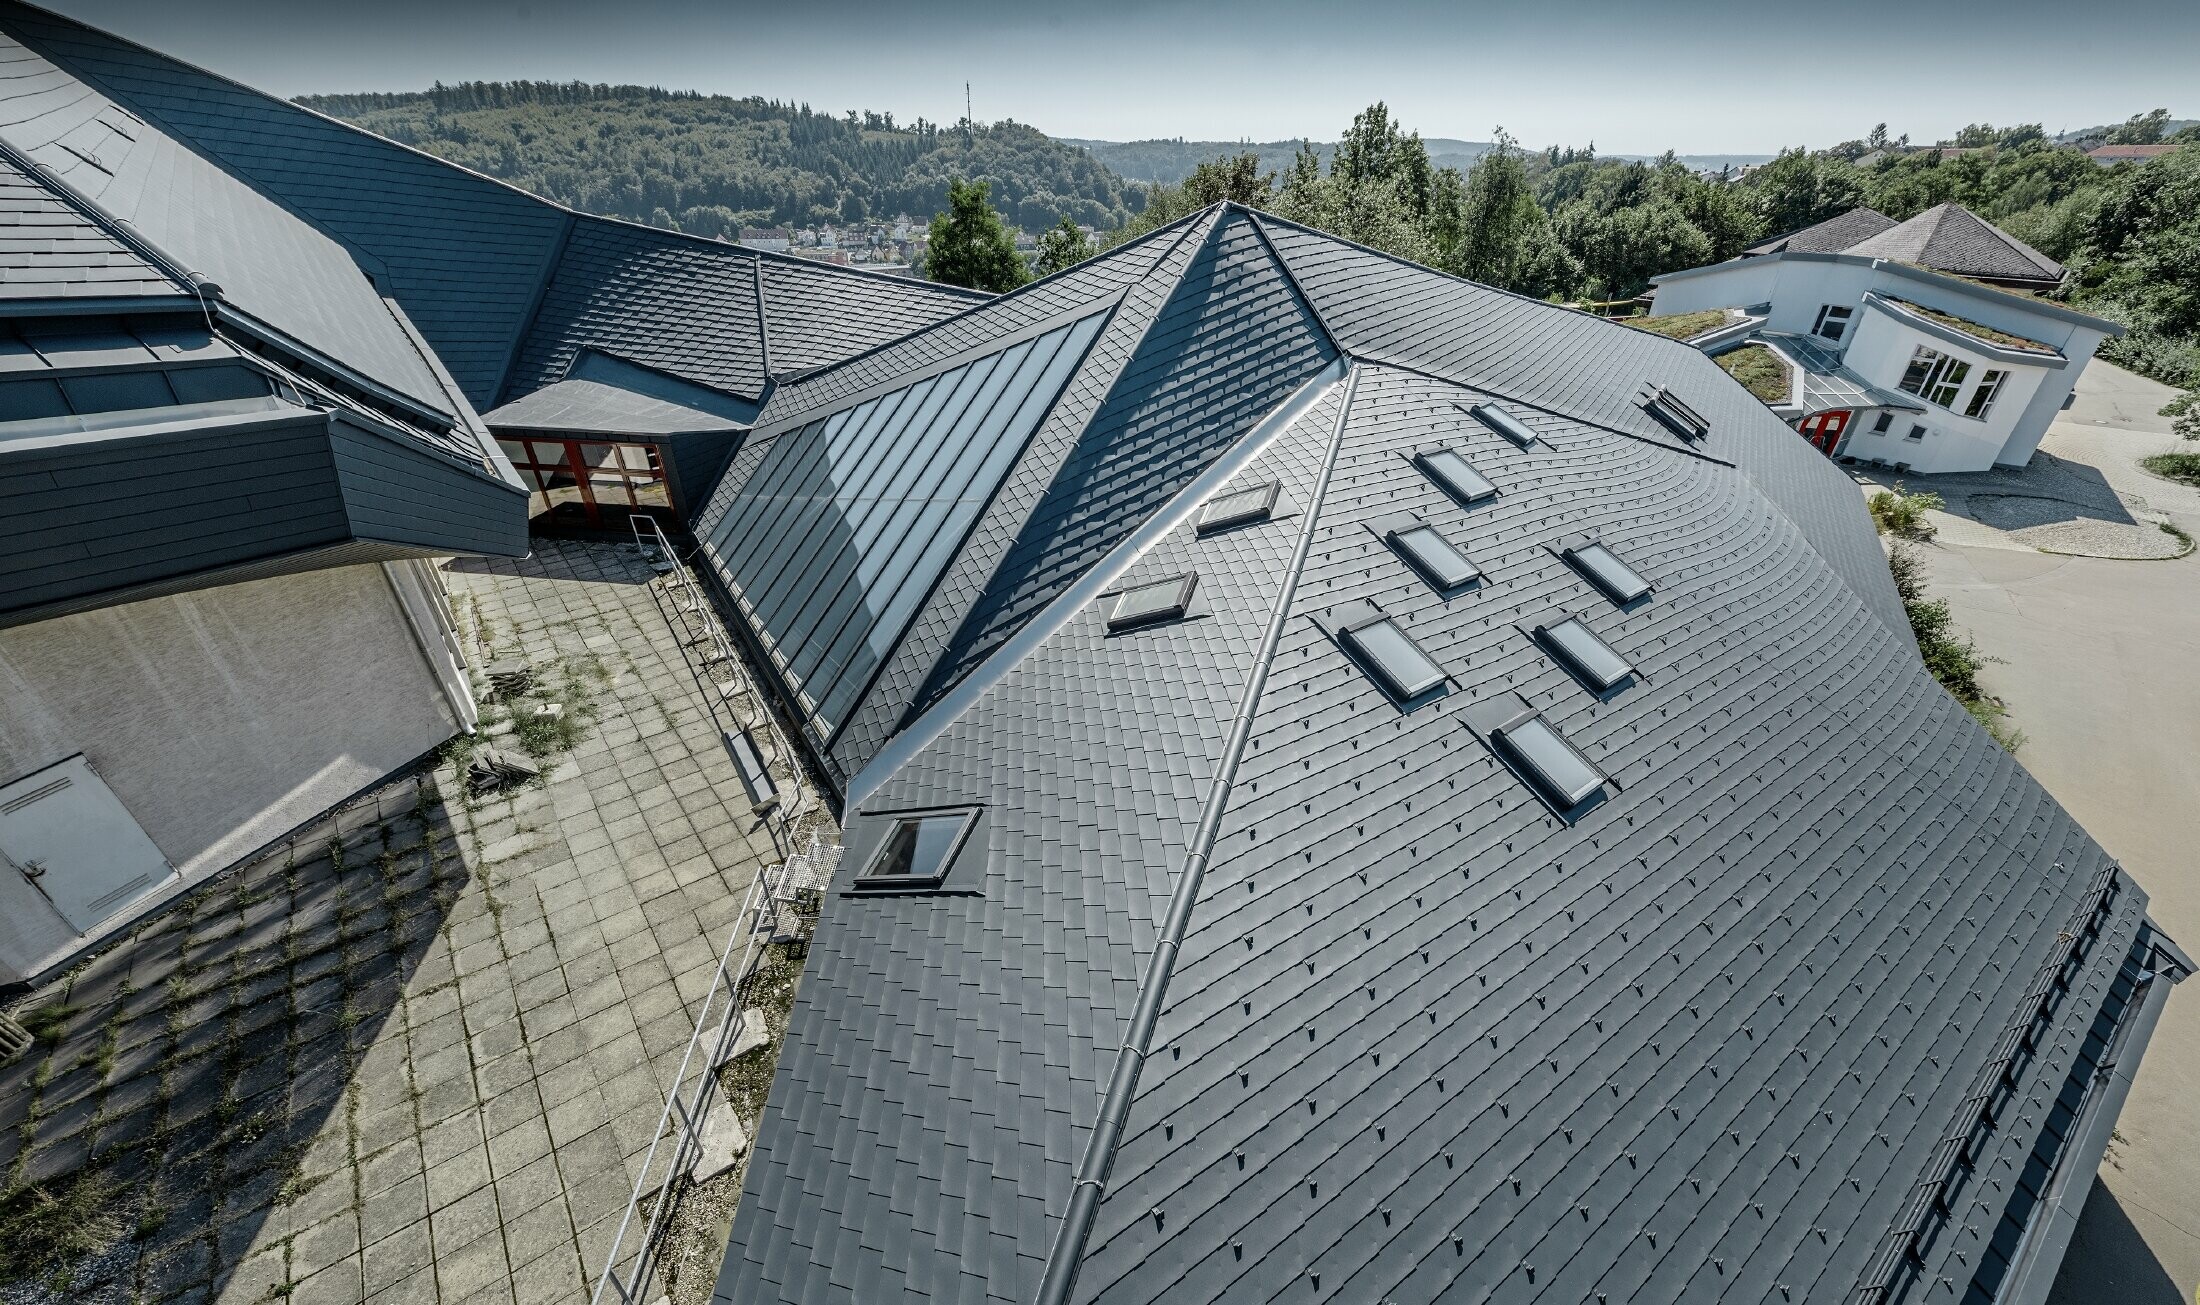 Szkoła „Waldorfschule” w Heidenheim z nowo wyremontowanym dachem: duża powierzchnia dachowa z wieloma załamaniami i pochyłościami została pokryta dachówką łupkową PREFA w kolorze antracytu